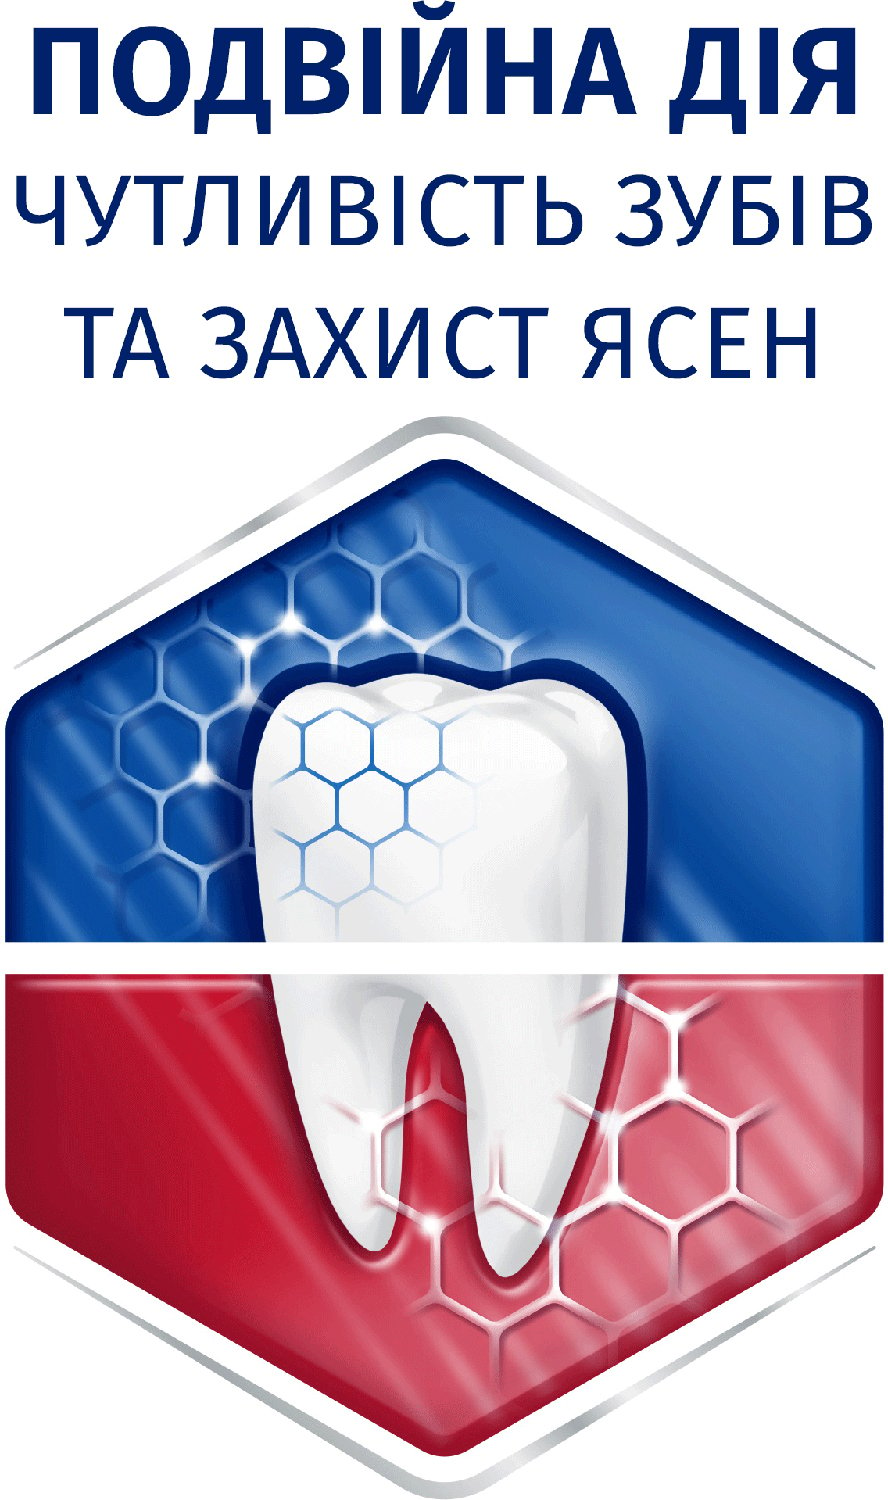 Зубная паста Sensodyne Чуствительность зубов и защита десен, 75 мл - фото 3